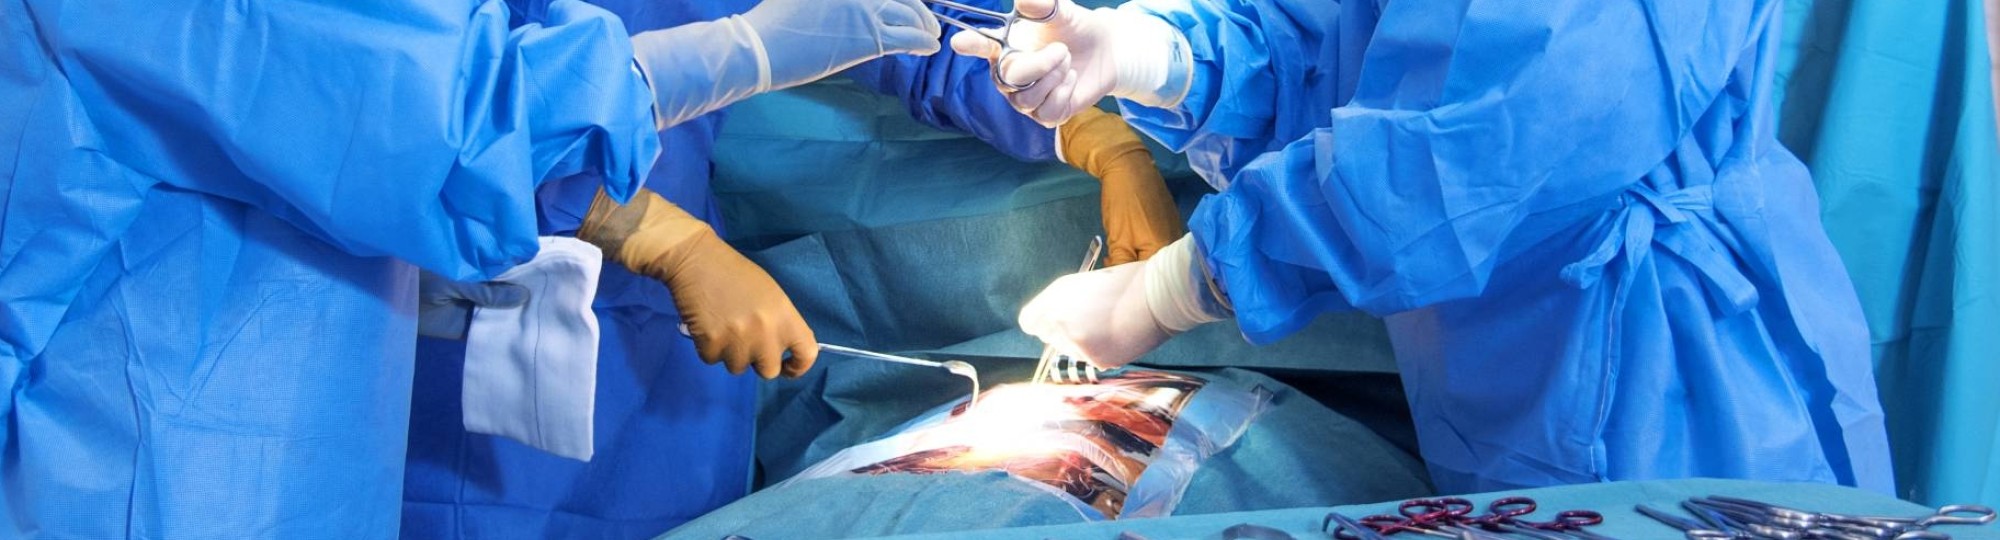 Medische Hulpverlening studenten oefenen operatie zonder docent